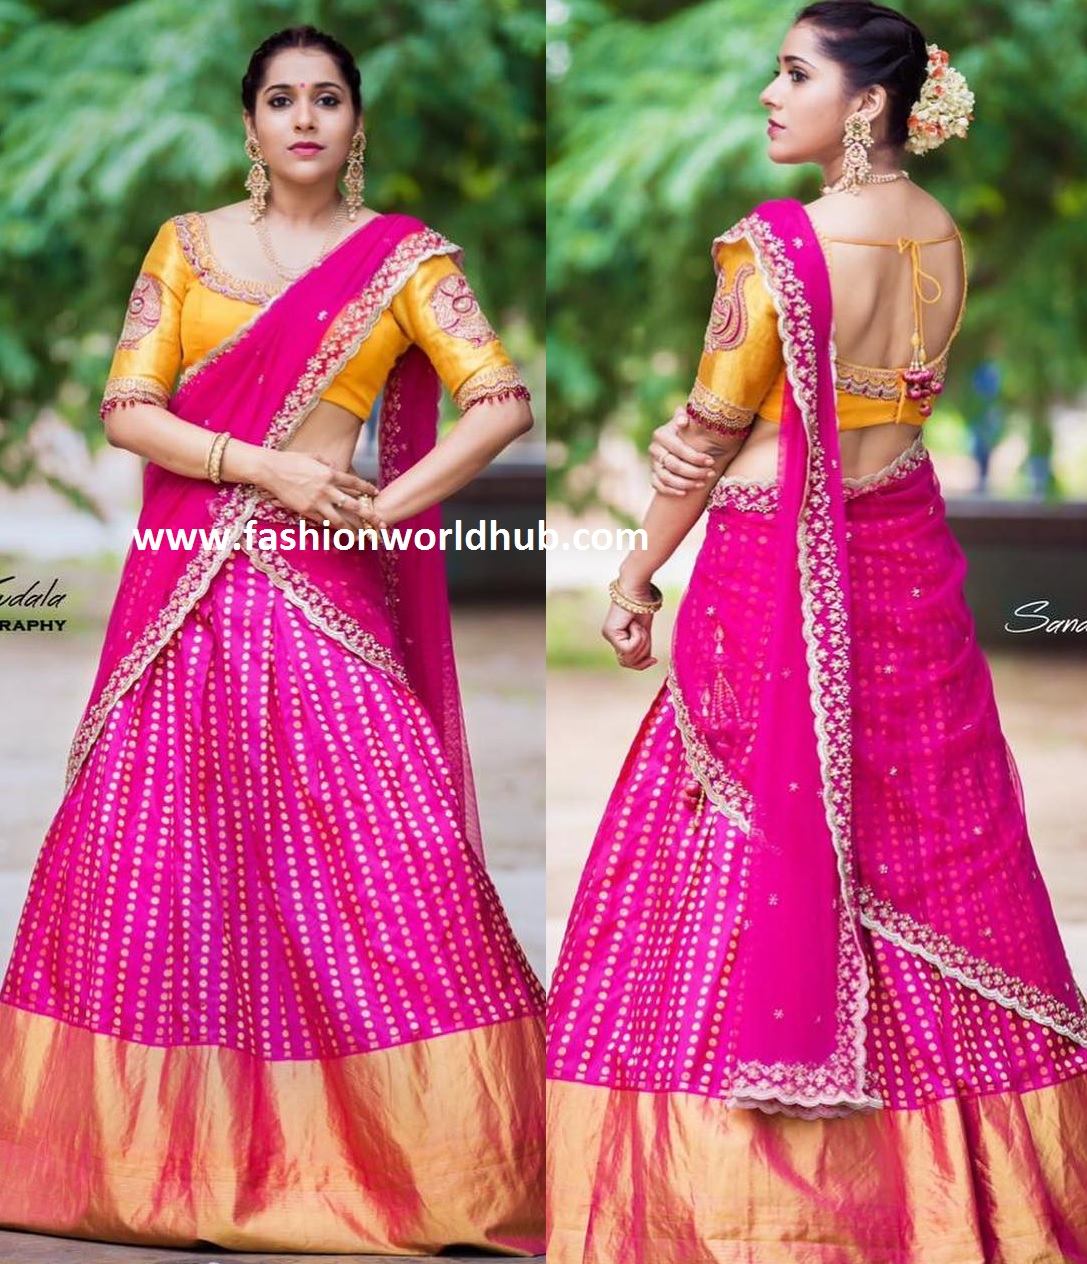 Rashmi Gautam in Pink Kanchi pattu Lehenga! | Fashionworldhub